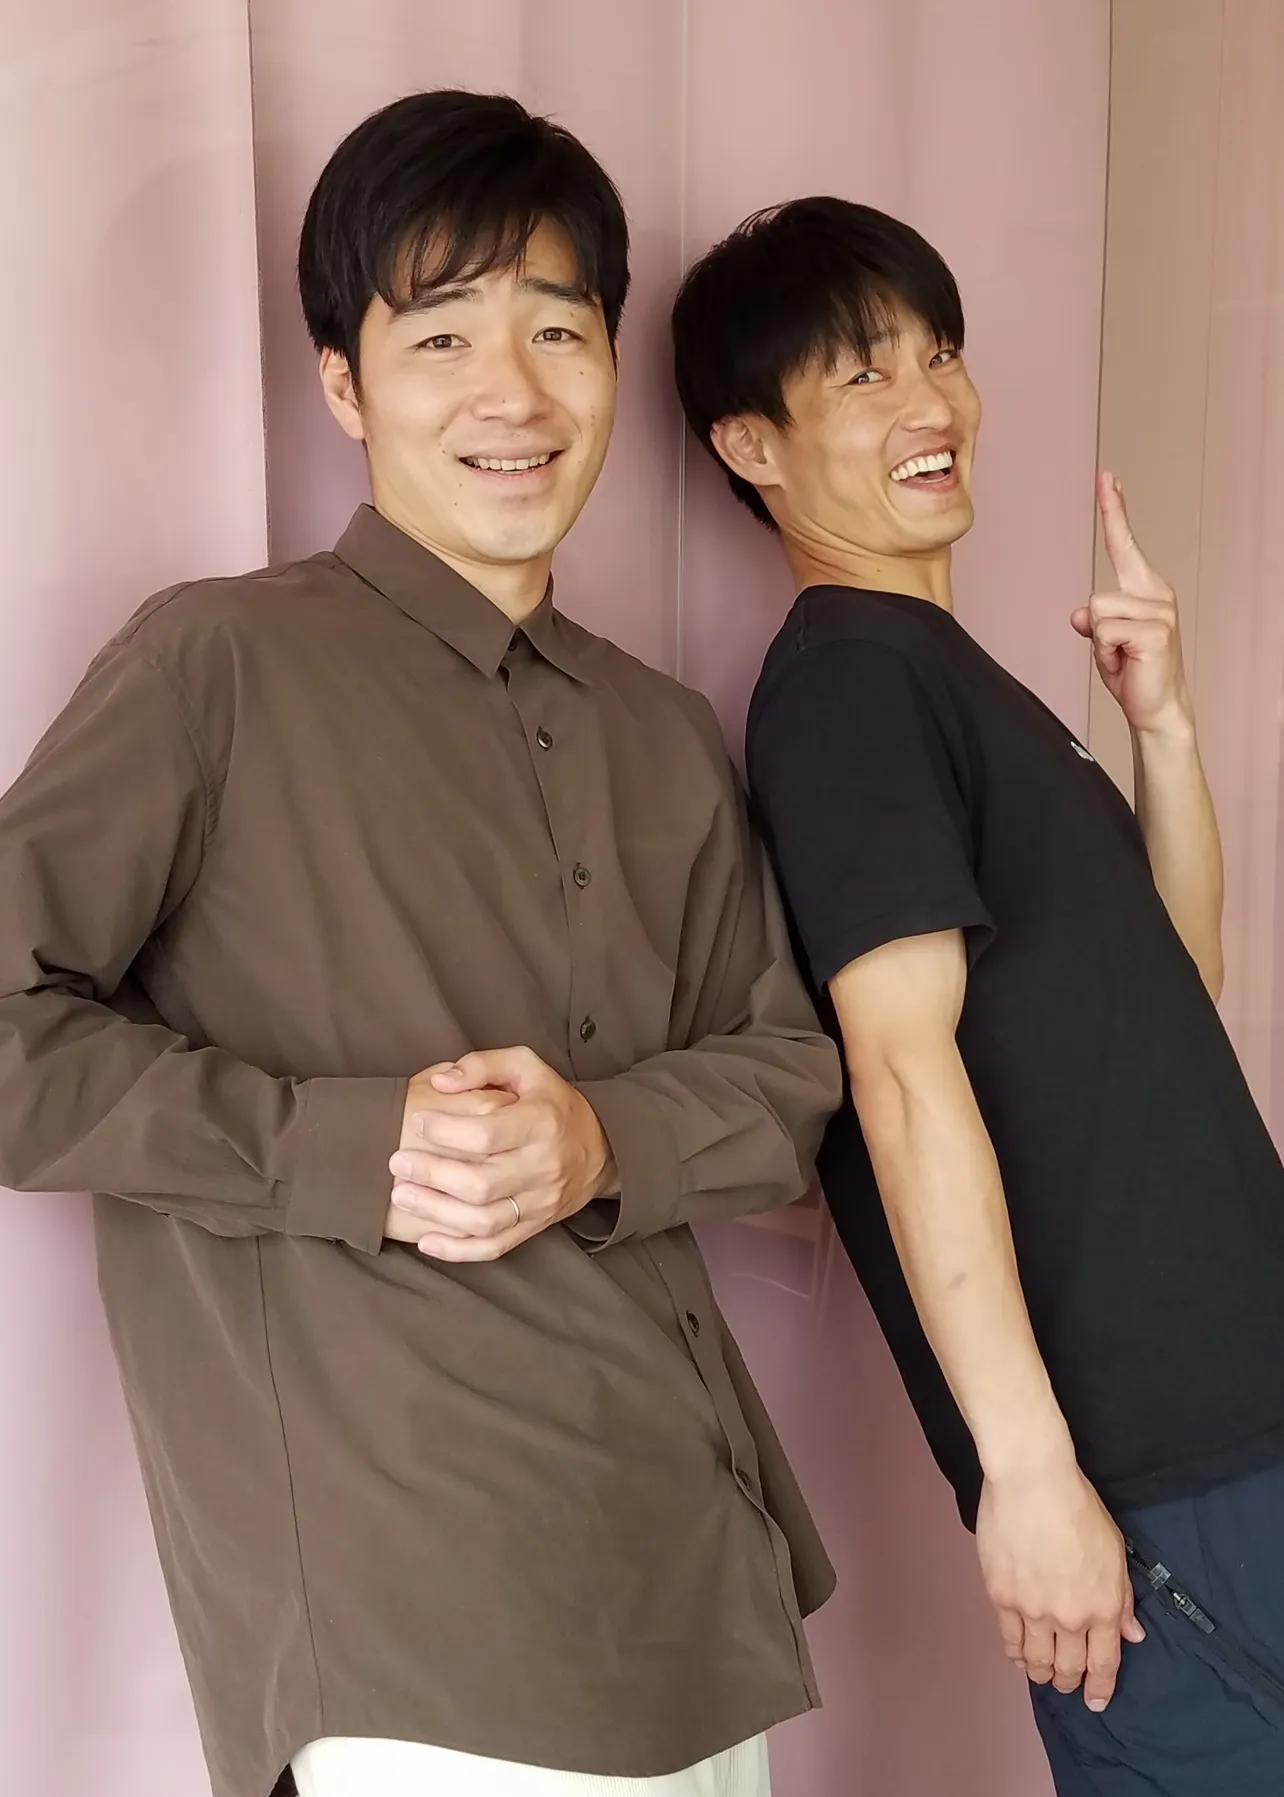 写真左：後藤淳平(ごとう・じゅんぺい) 1984年3月20日生まれ、大阪府出身。右：福徳秀介(ふくとく・しゅうすけ) 1983年10月5日生まれ、兵庫県出身。NSC大阪25期生の二人が2003年にコンビ結成